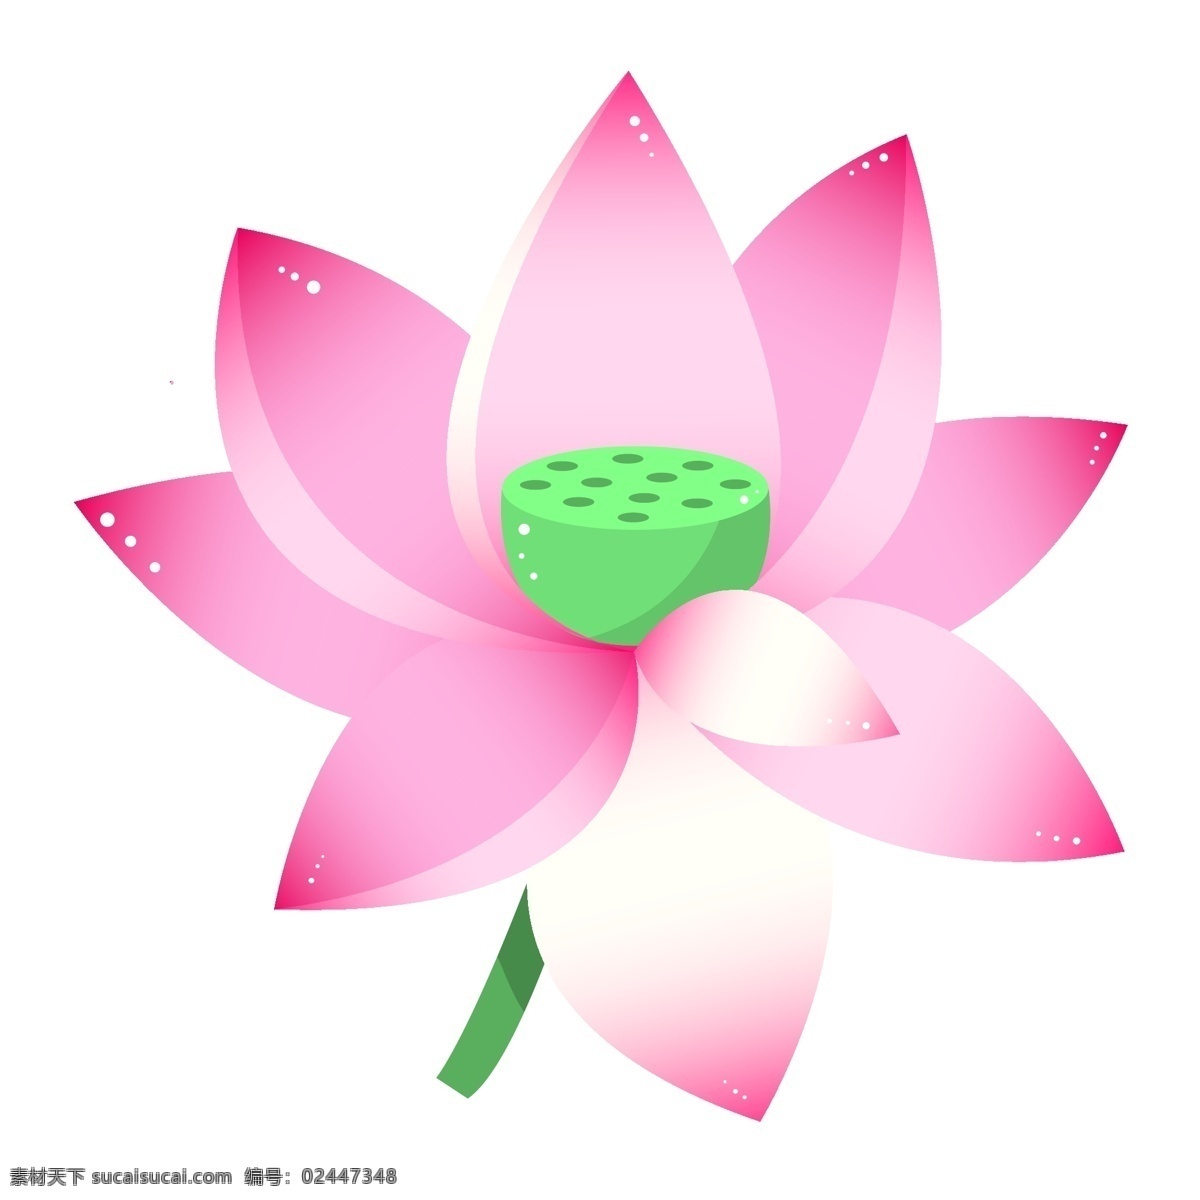 粉色 荷花 装饰 插画 粉色的荷花 漂亮的荷花 荷花装饰 荷花插画 绿色的莲蓬 创意荷花 植物装饰